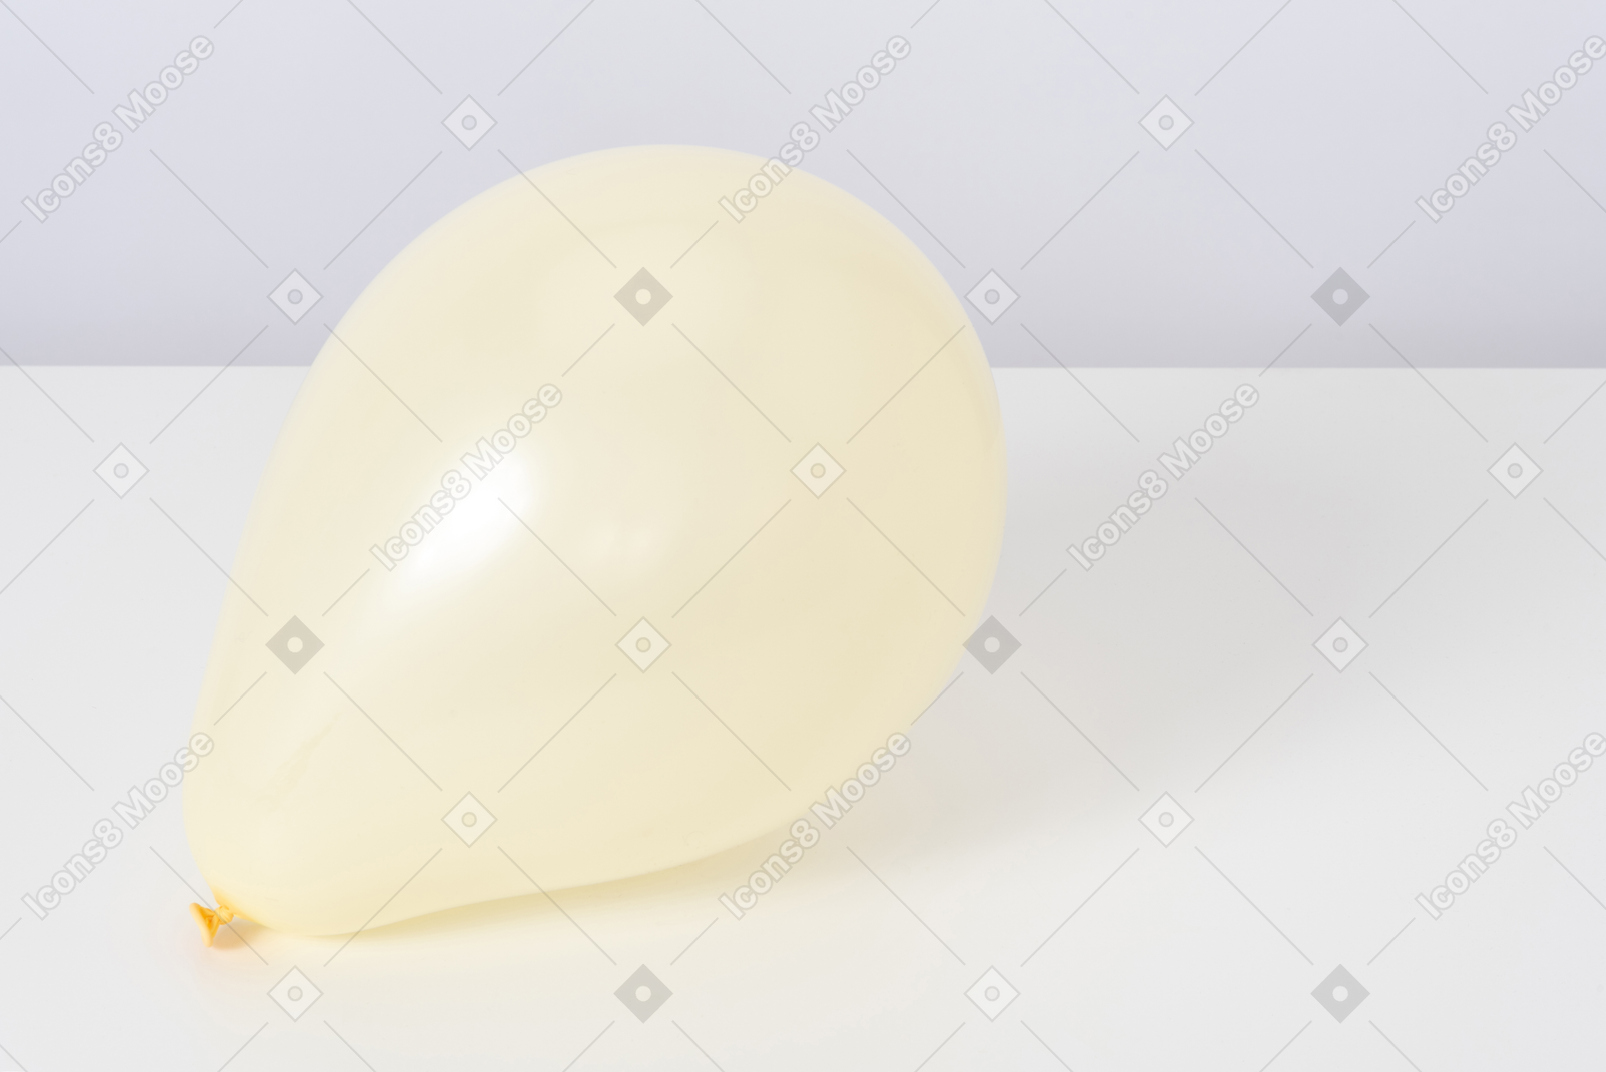 Yellow balloon on a white background